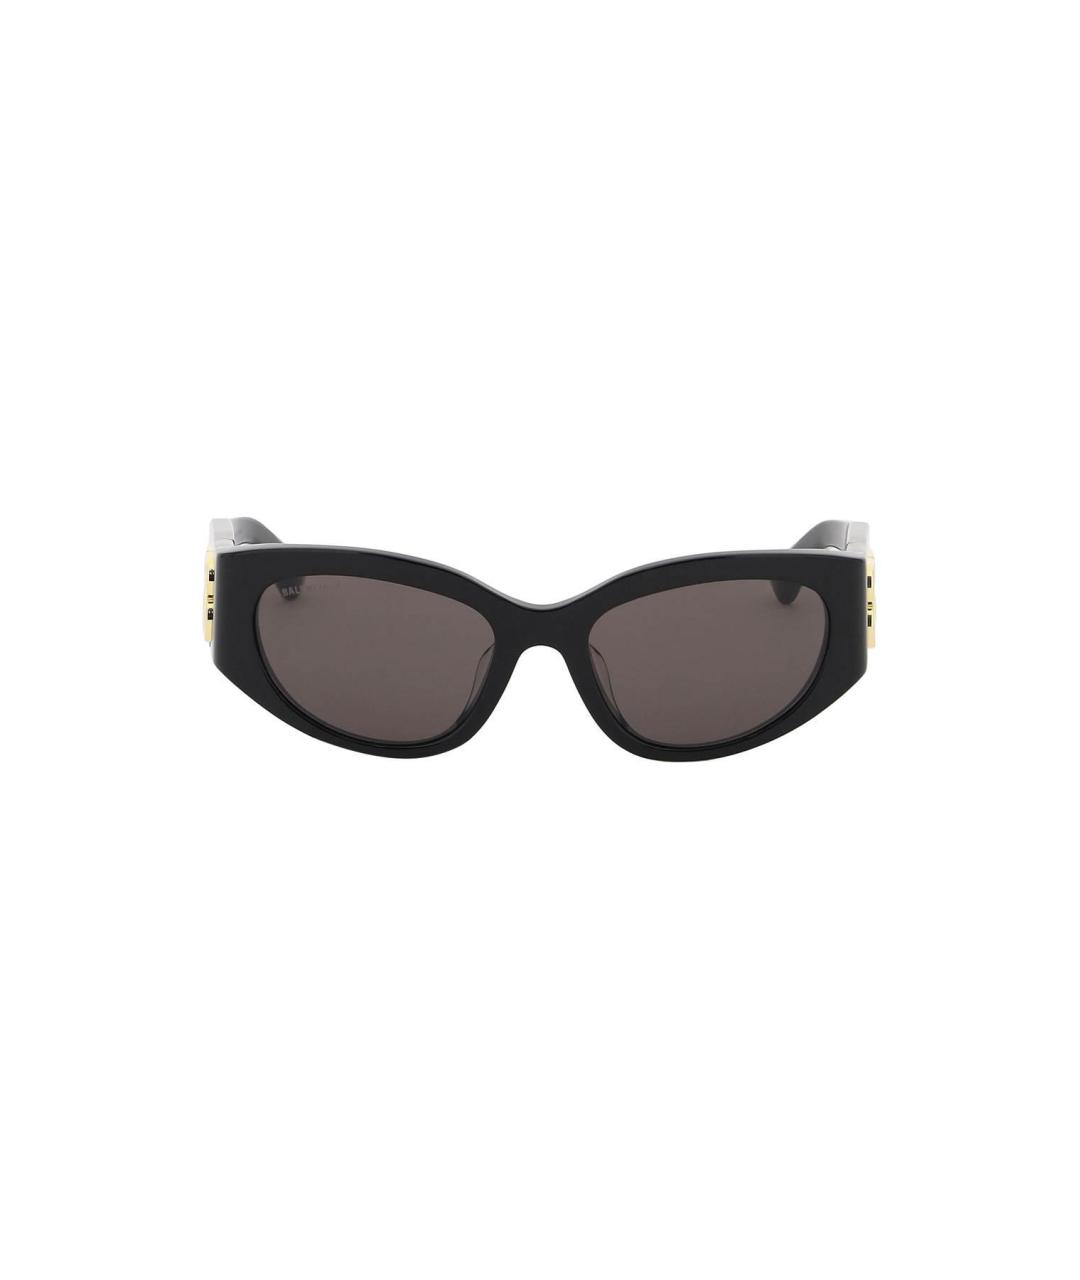 BALENCIAGA Черные солнцезащитные очки, фото 1